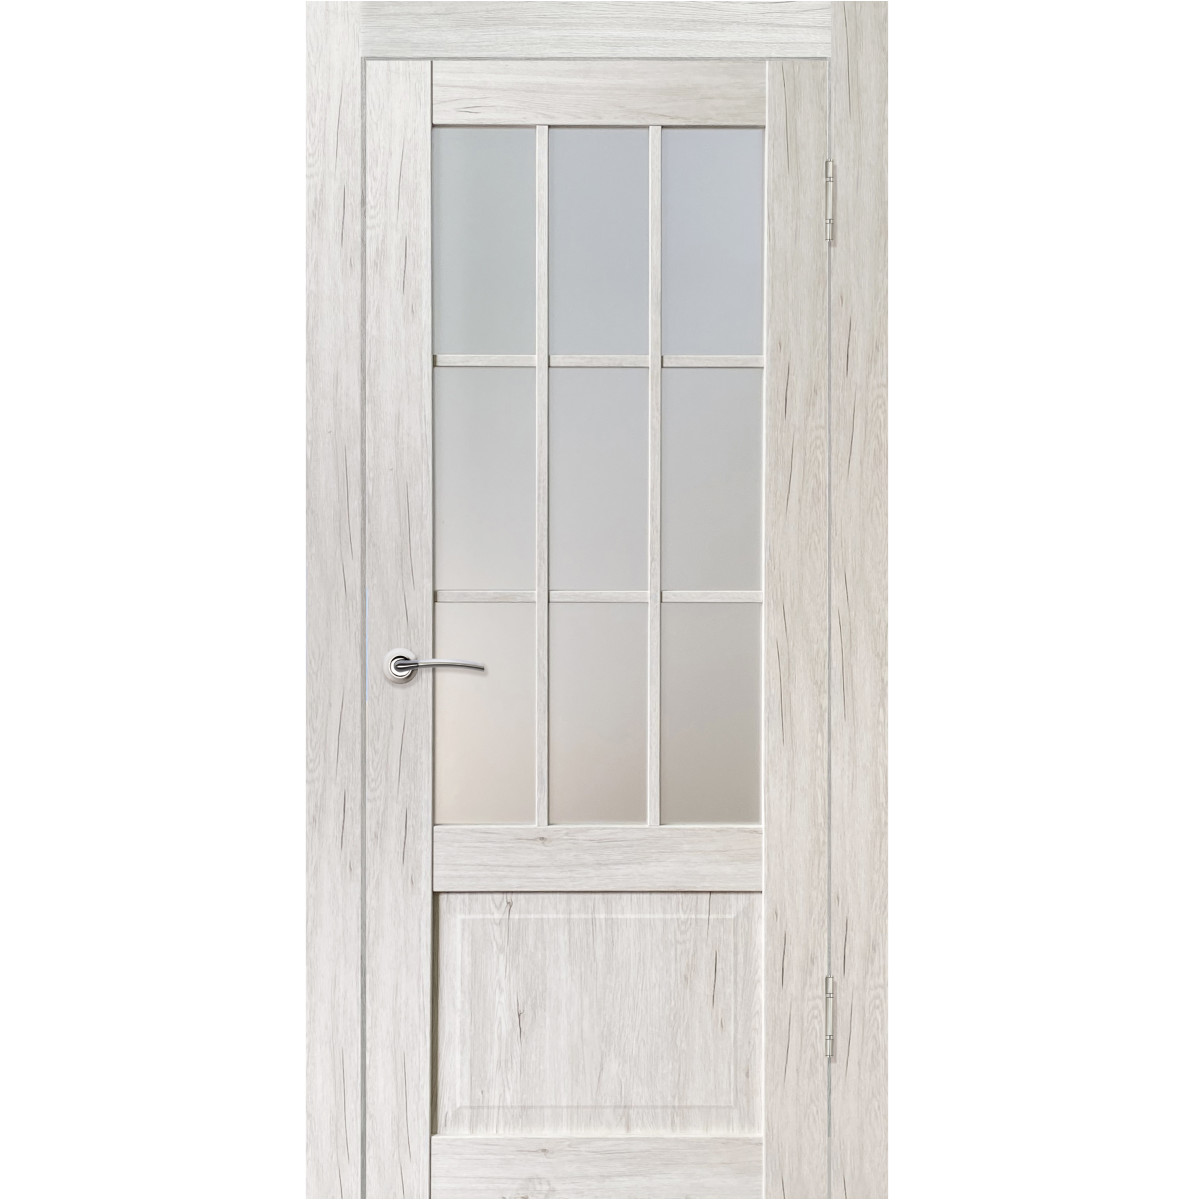 Дверь межкомнатная остеклённая Амелия 90х200 см с фурнитурой, ПВХ, цвет рустик серый